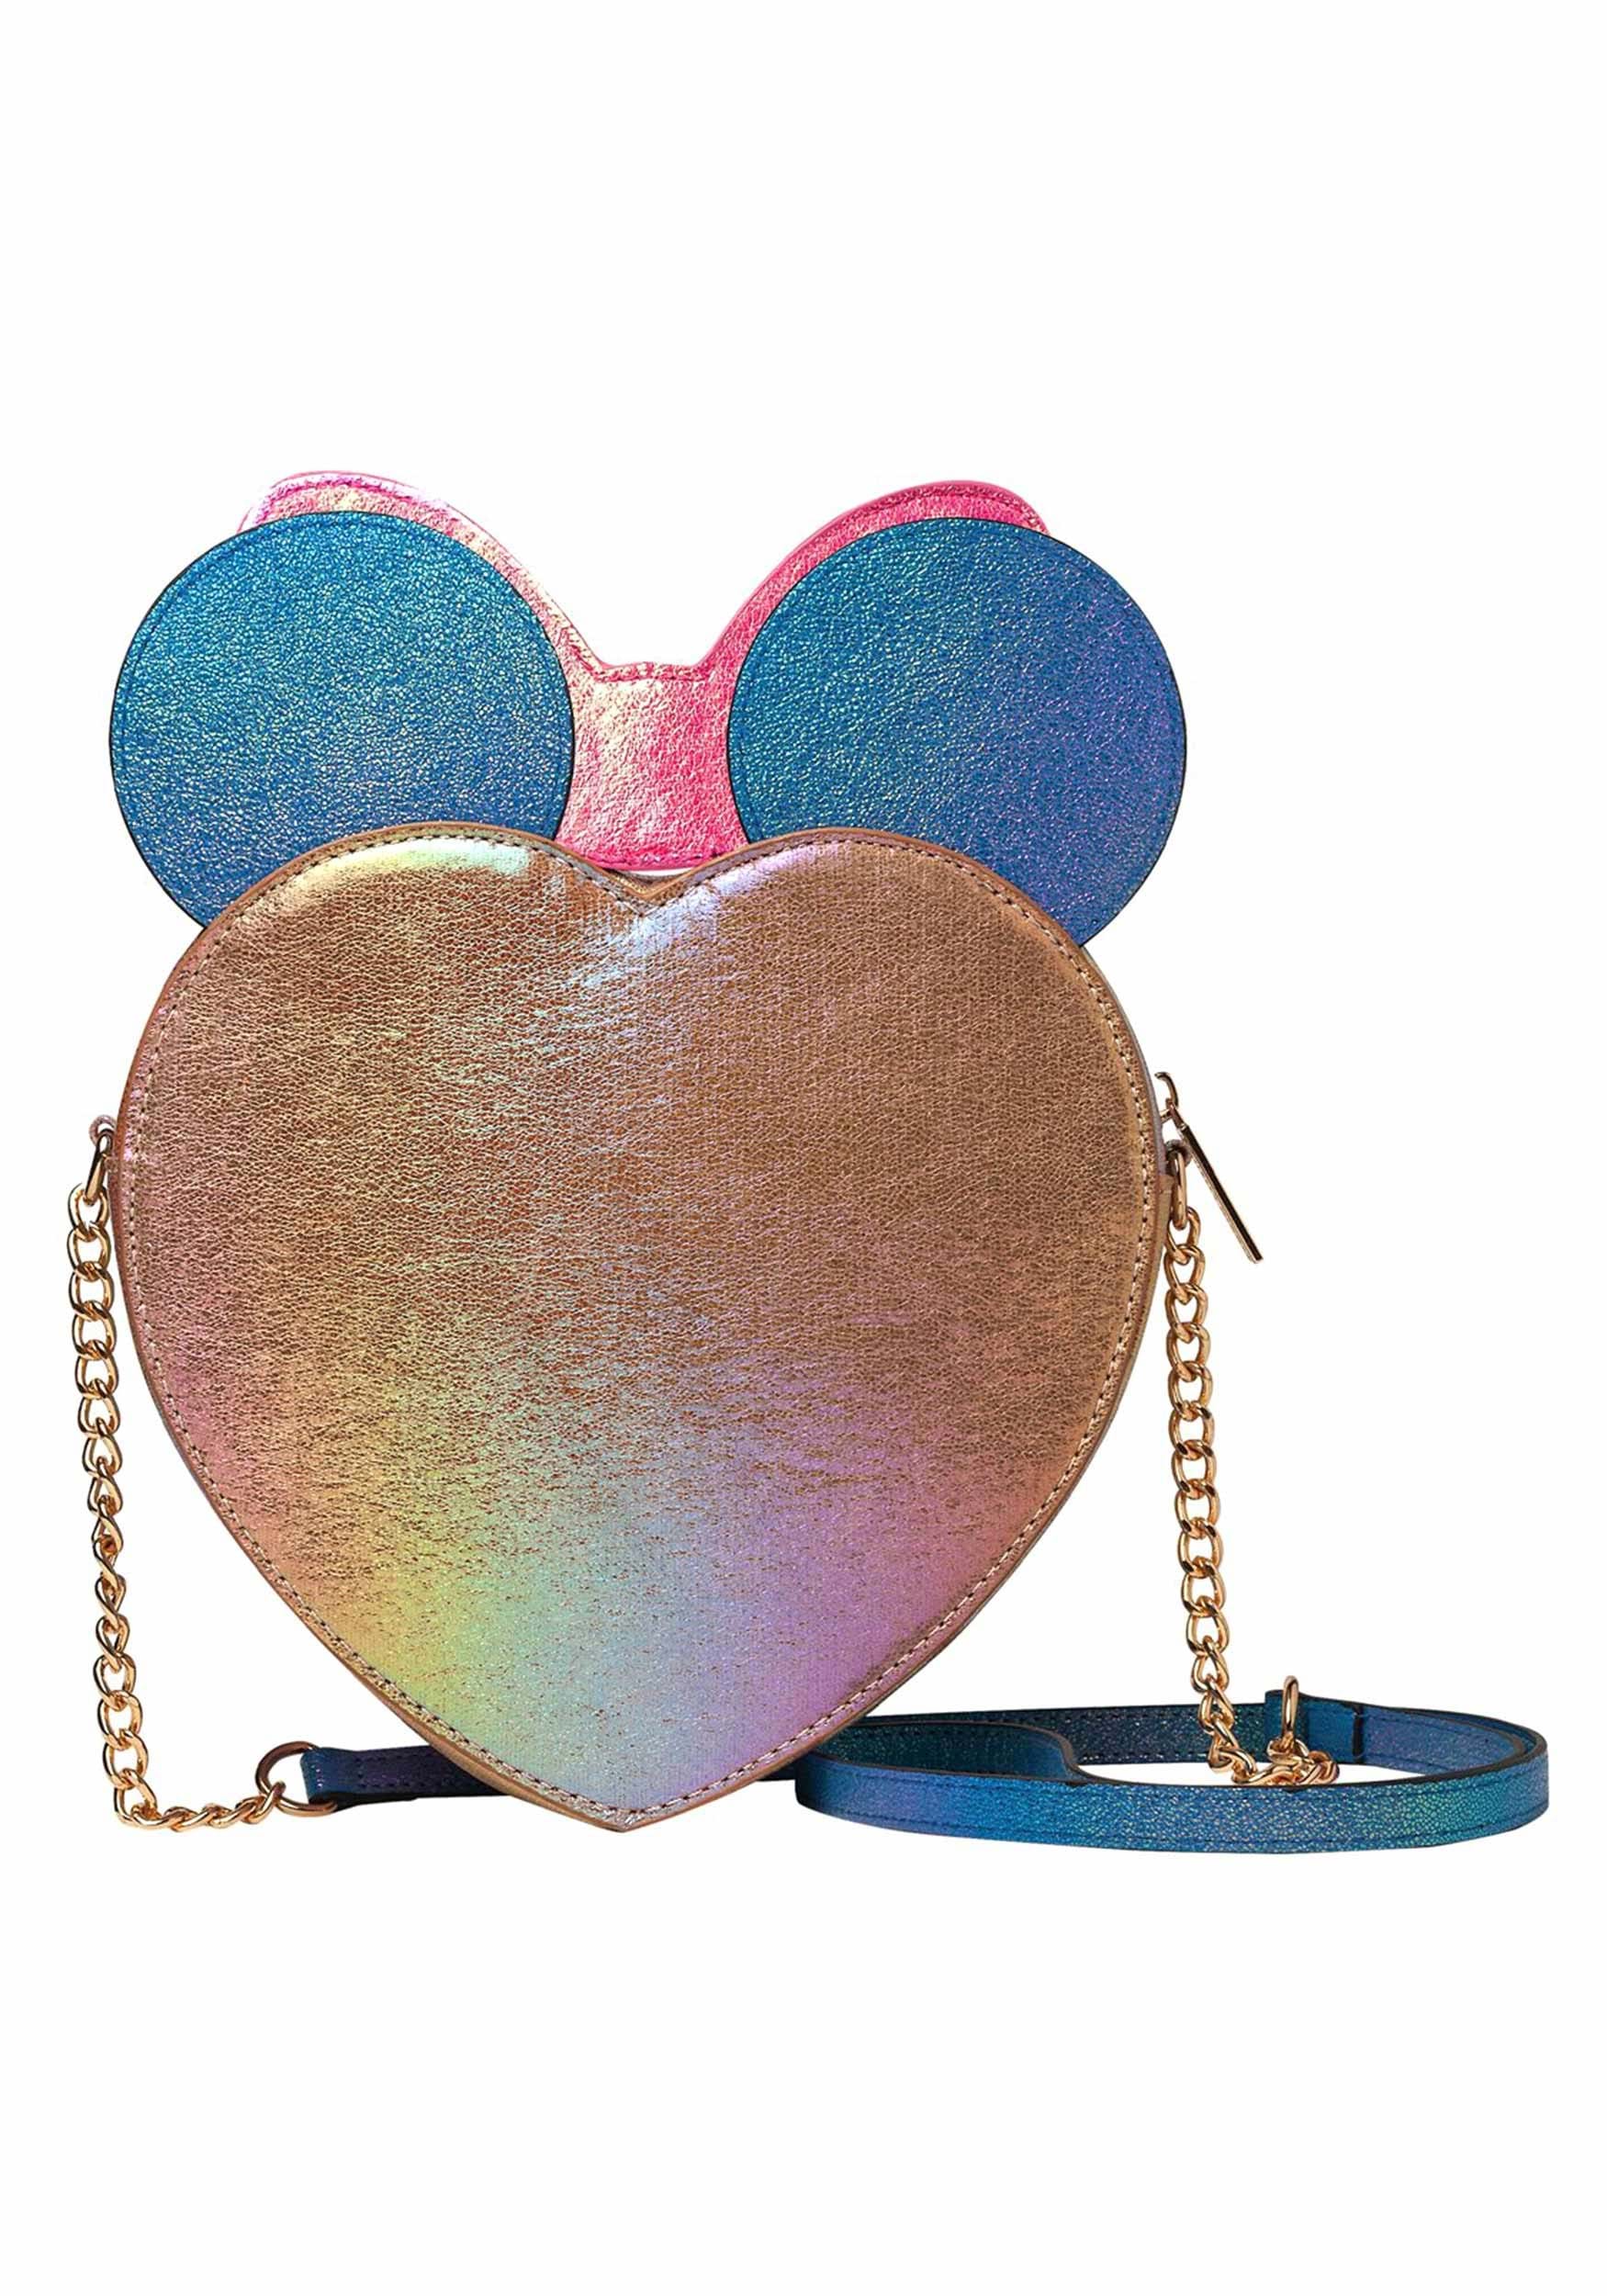 Minnie Mouse Confetti Danielle Nicole Crossbody Bag